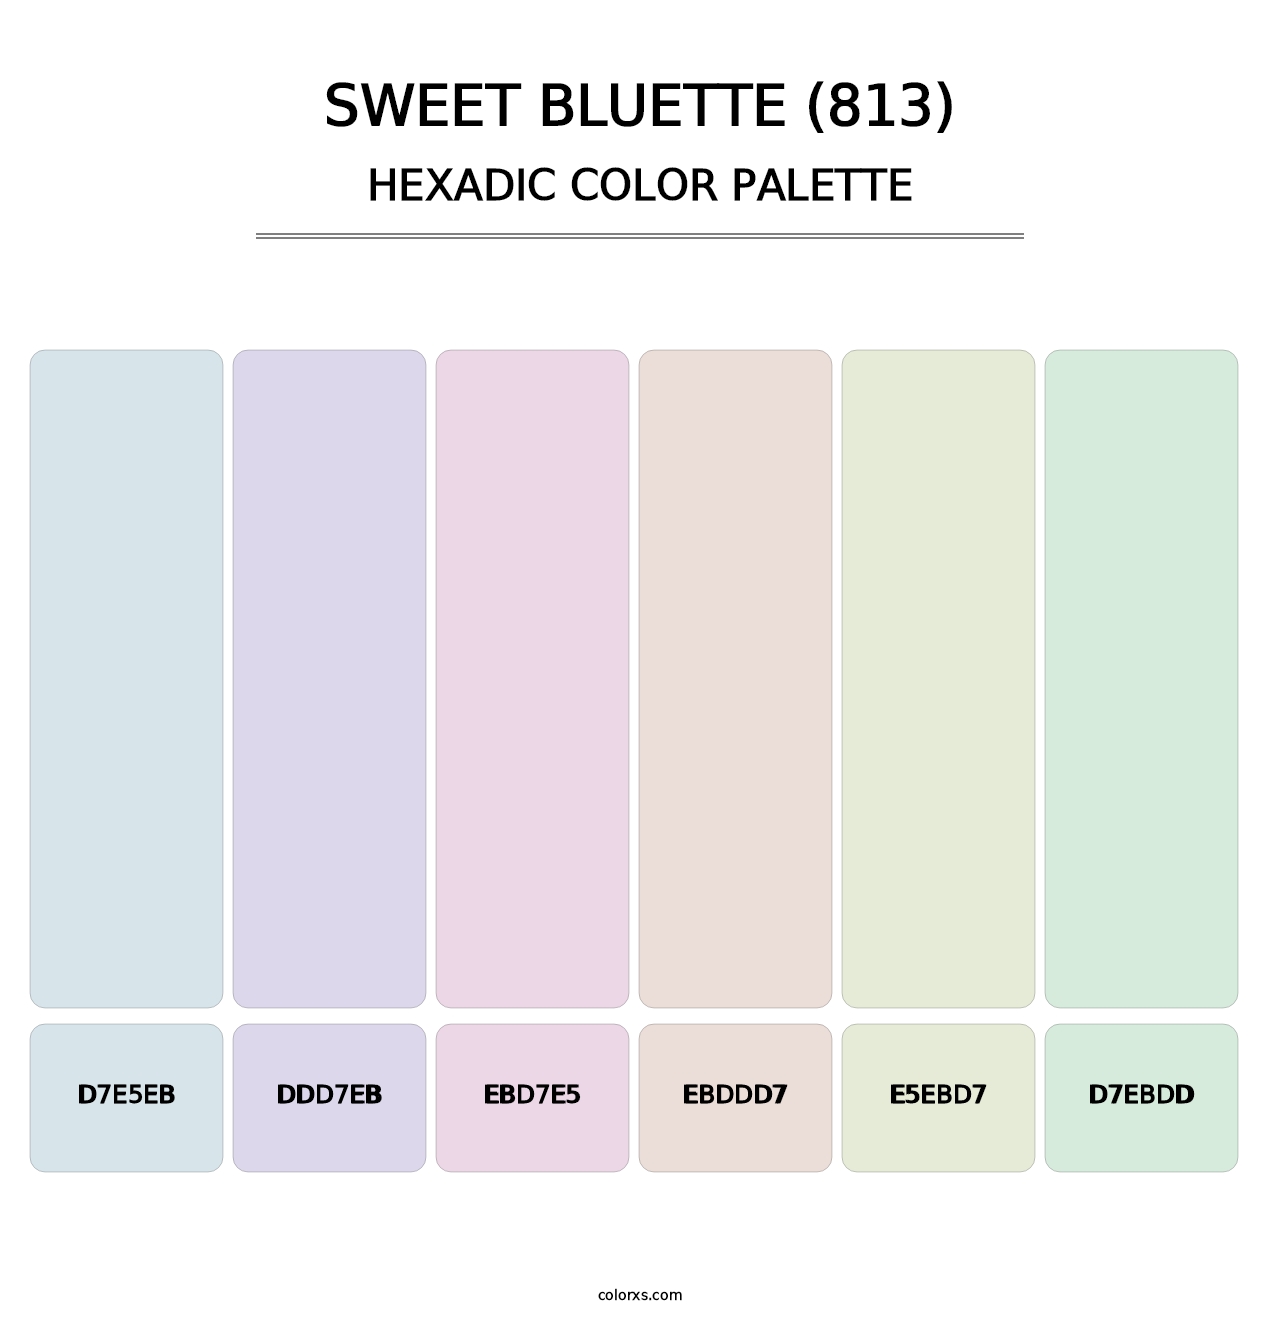 Sweet Bluette (813) - Hexadic Color Palette